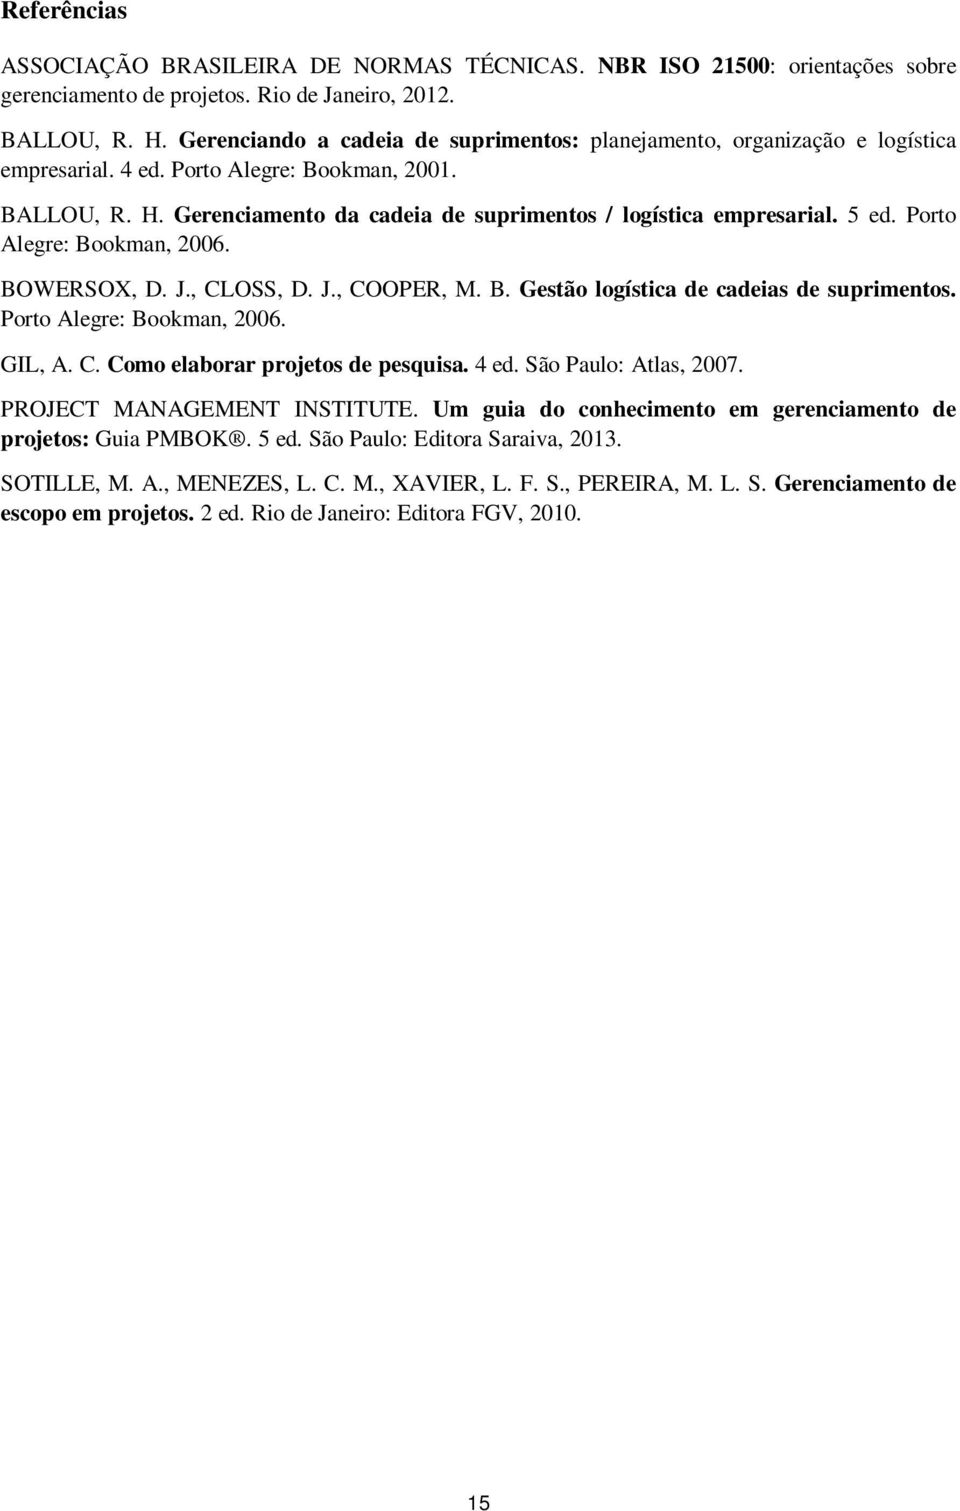 5 ed. Porto Alegre: Bookman, 2006. BOWERSOX, D. J., CLOSS, D. J., COOPER, M. B. Gestão logística de cadeias de suprimentos. Porto Alegre: Bookman, 2006. GIL, A. C. Como elaborar projetos de pesquisa.